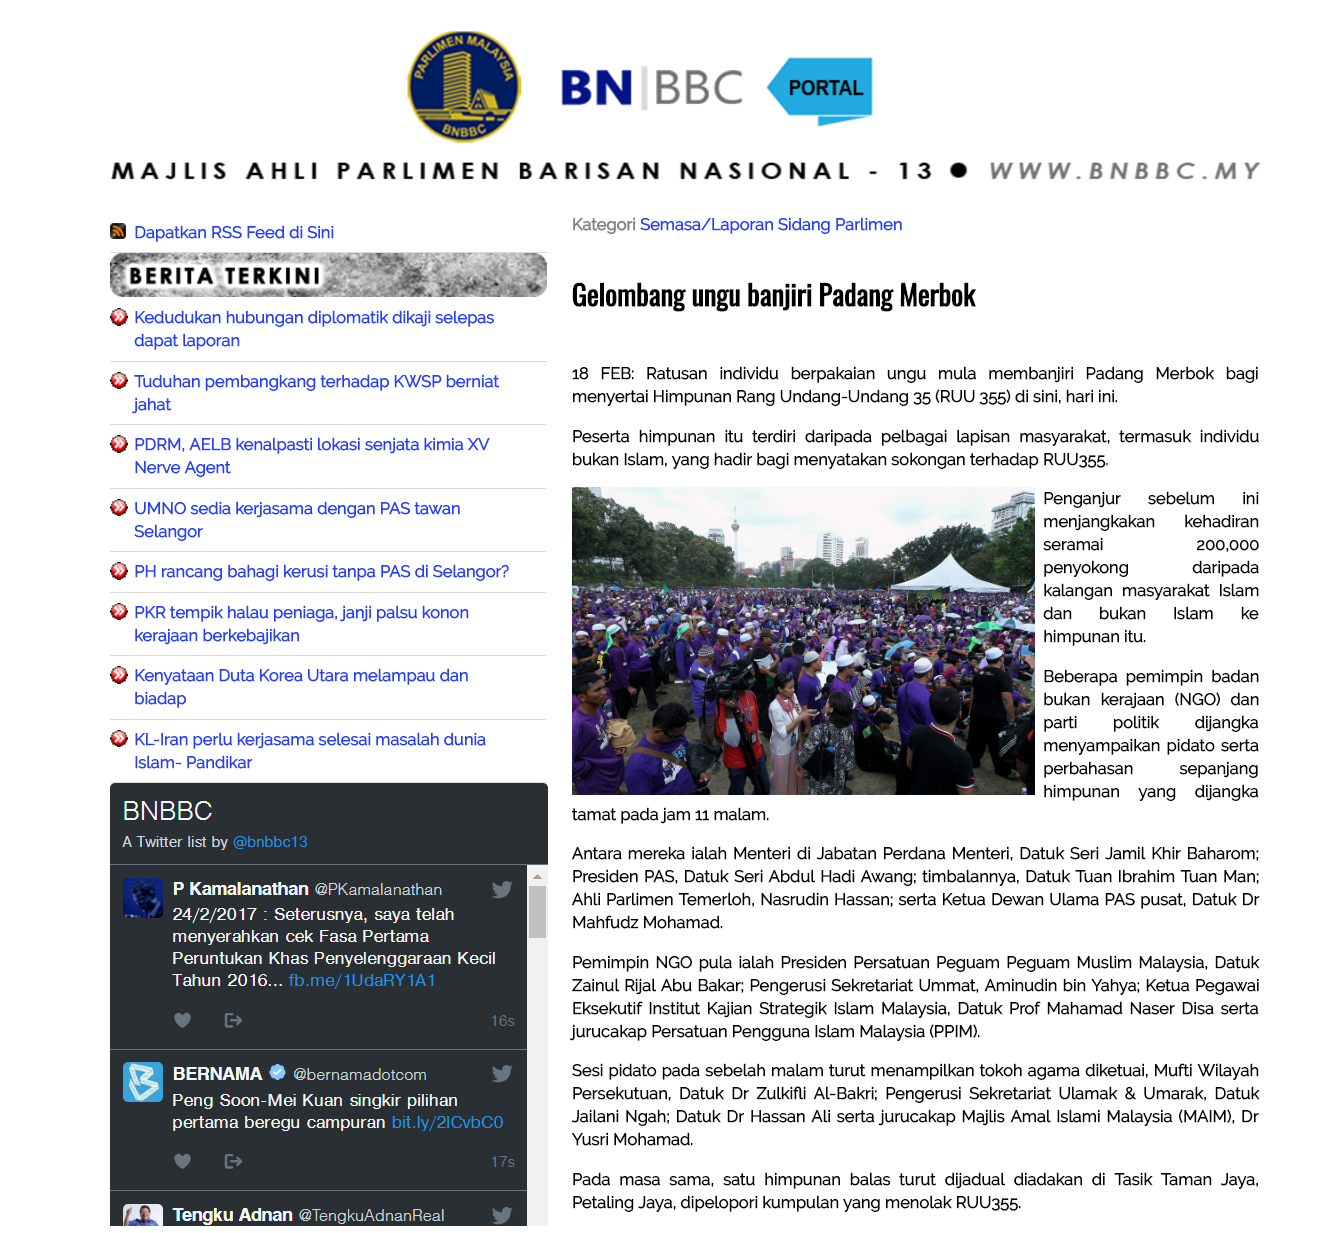 Gelombang ungu banjiri Padang Merbok